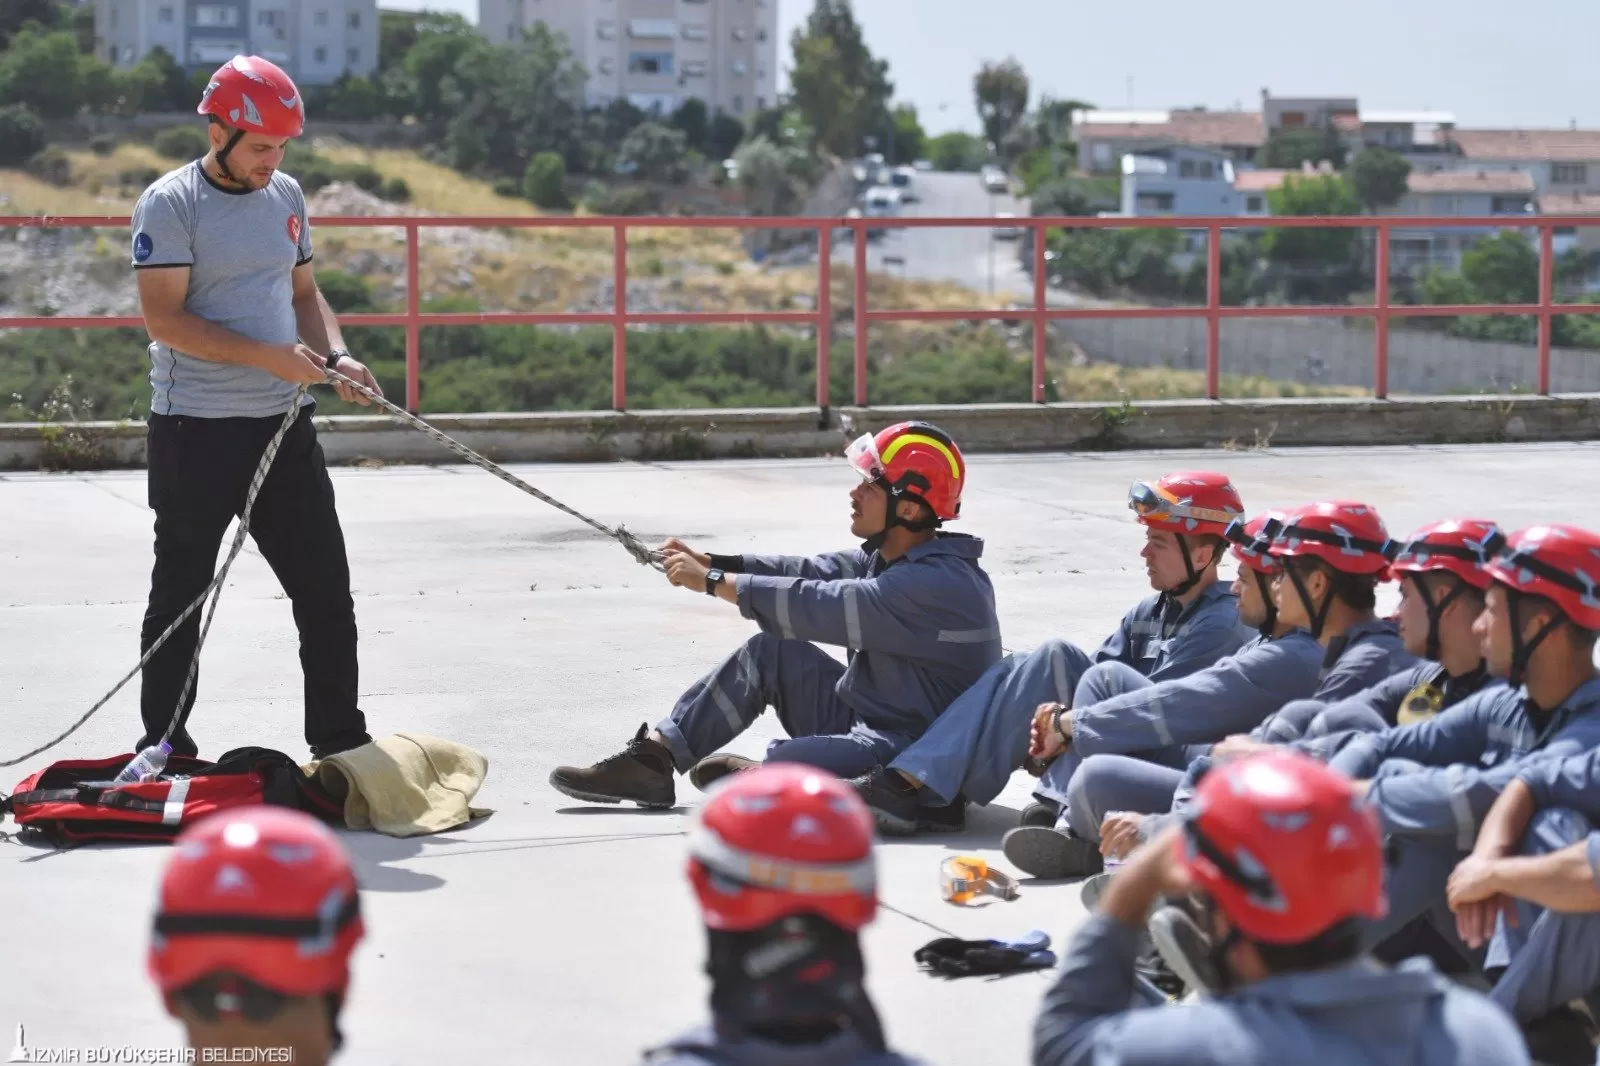 Heyecan ve Adrenalin dolu parkurlarda, alevlerle mücadeleye hazırlanan itfaiyeciler, İzmir'in güvenliği için ter döküyor.